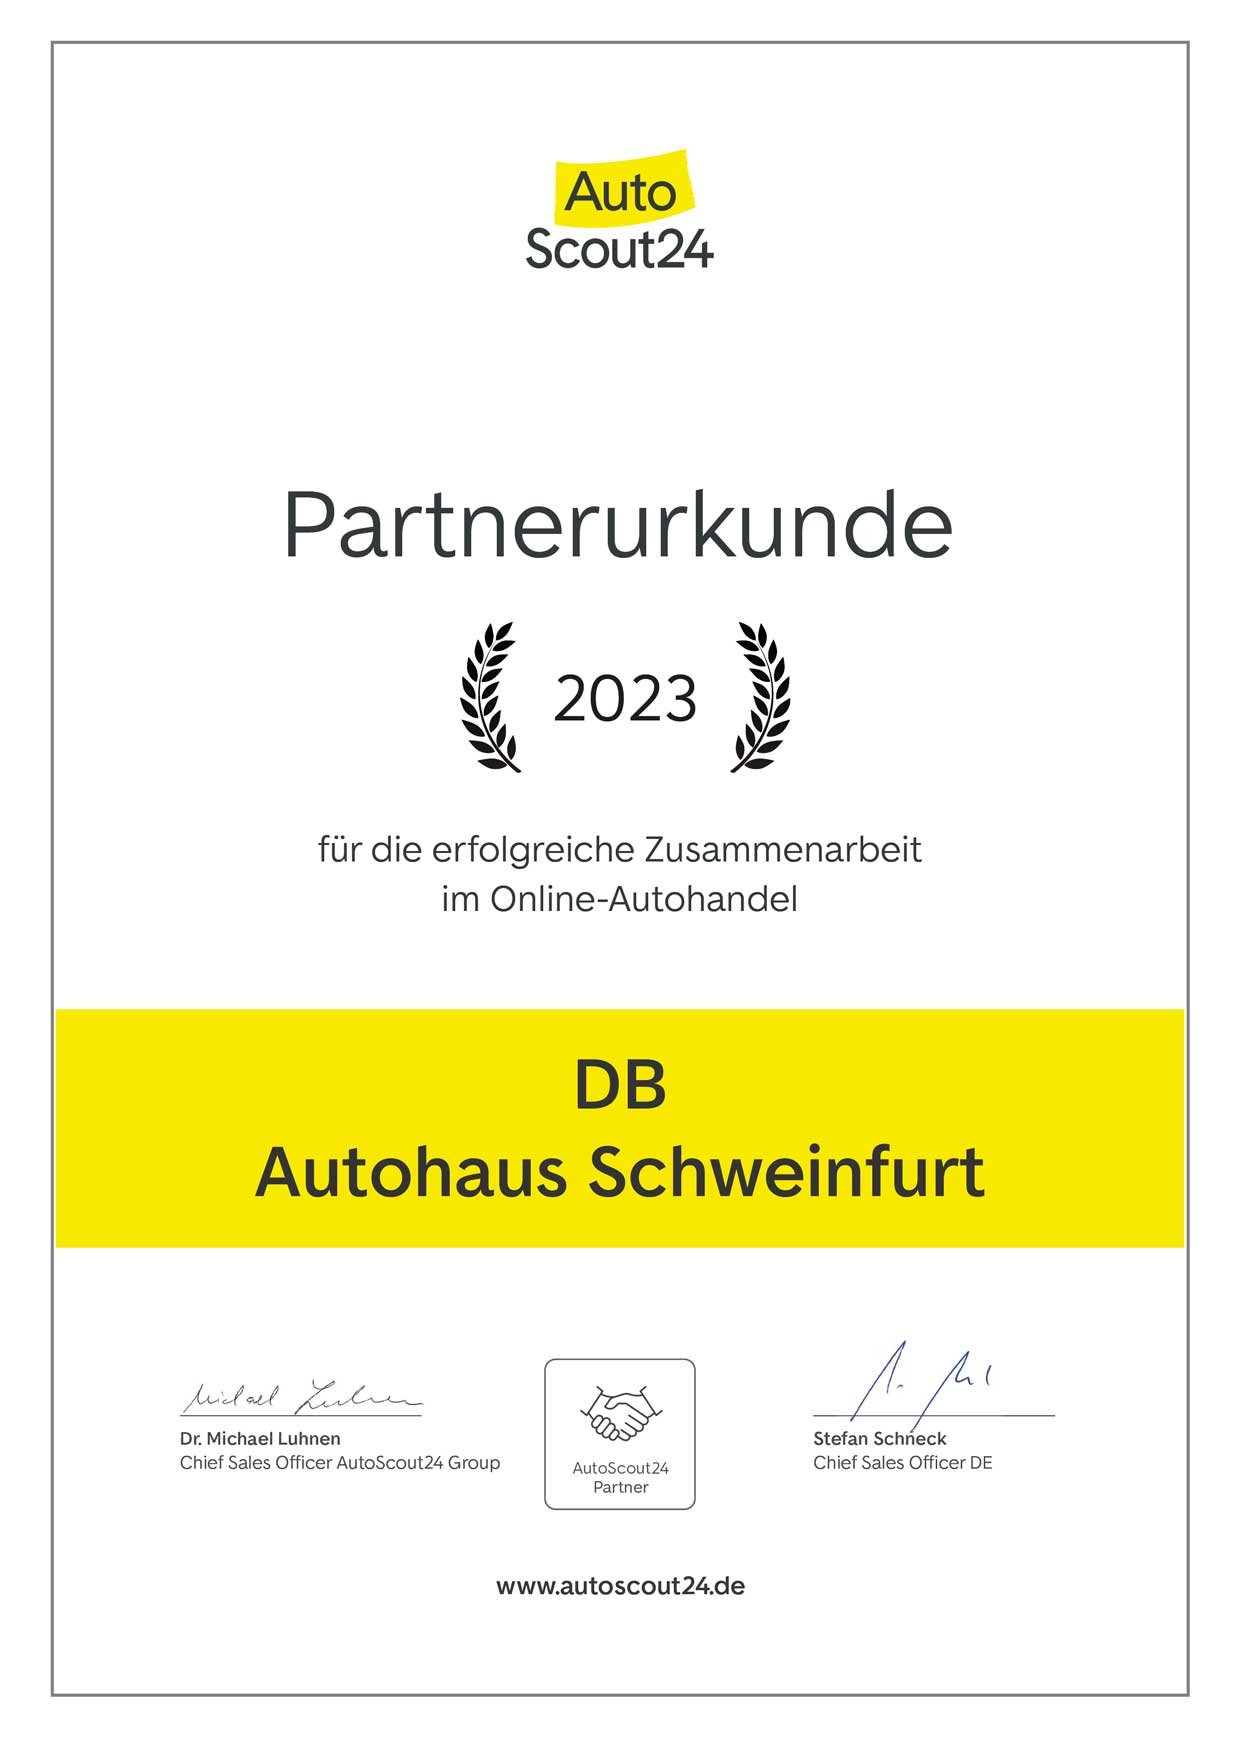 Partnerurkunde von Autoscout24 für DB Autohaus Schweinfurt